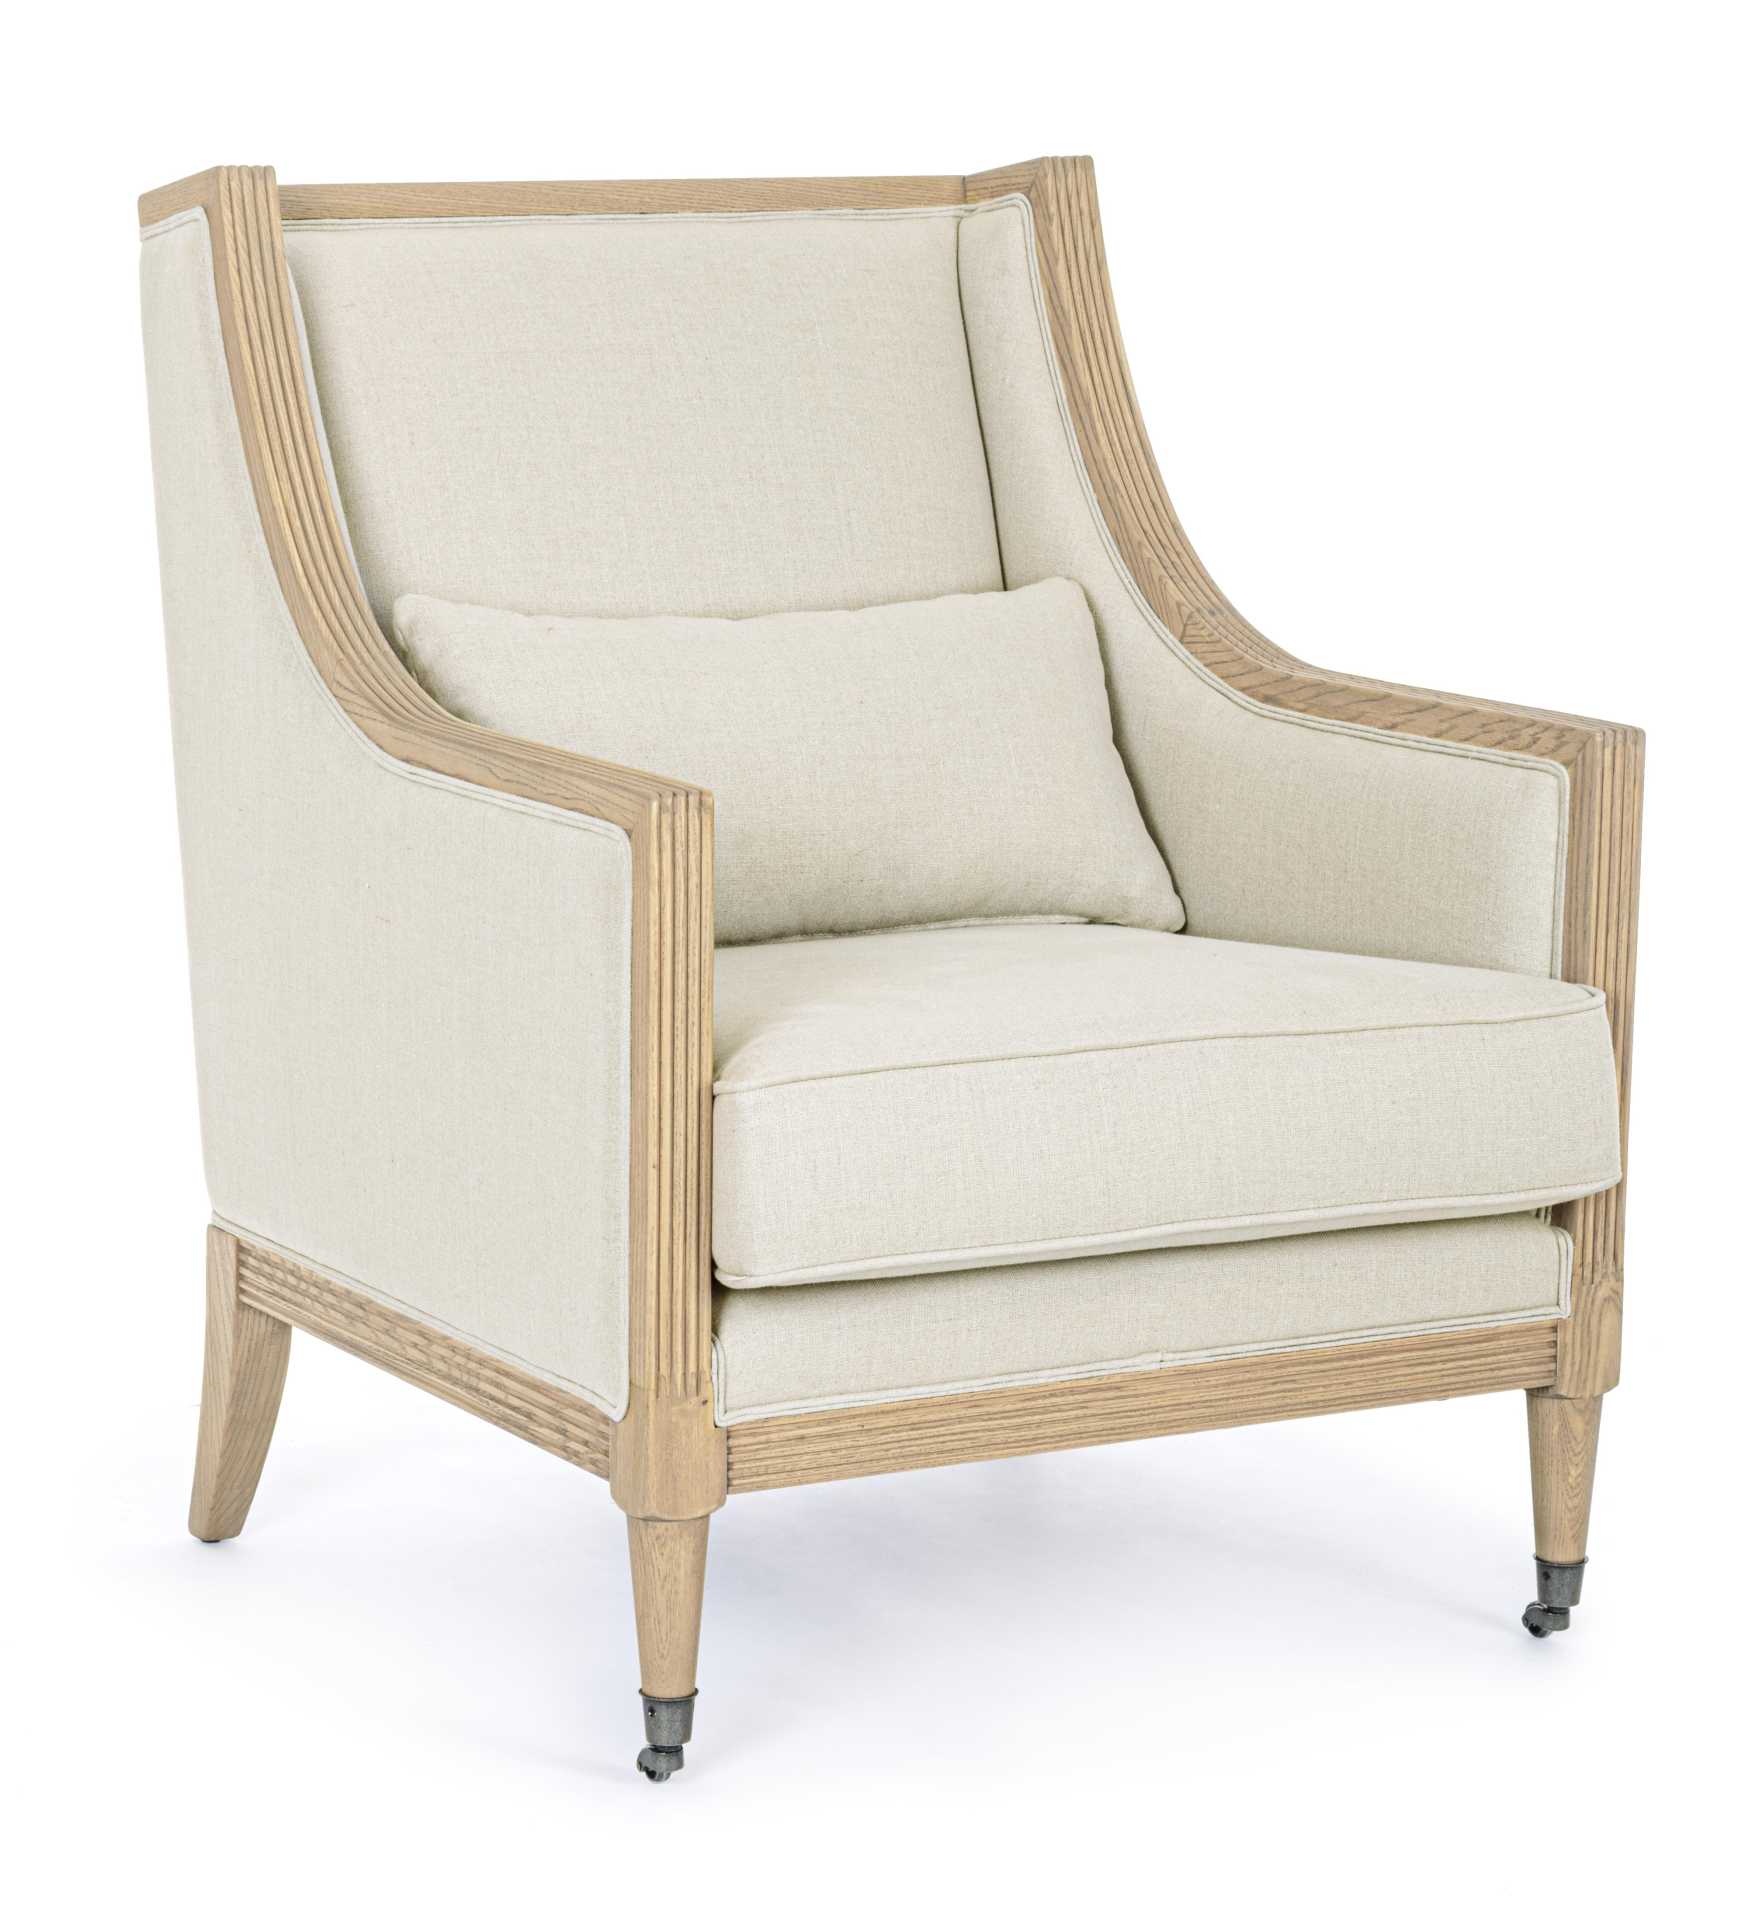 Der Sessel Marlin überzeugt mit seinem klassischen Design. Gefertigt wurde er aus Stoff, welcher einen natürlichen Farbton besitzt. Das Gestell ist aus Eschenholz und hat eine natürliche Farbe. Der Sessel besitzt eine Sitzhöhe von 47 cm. Die Breite beträg